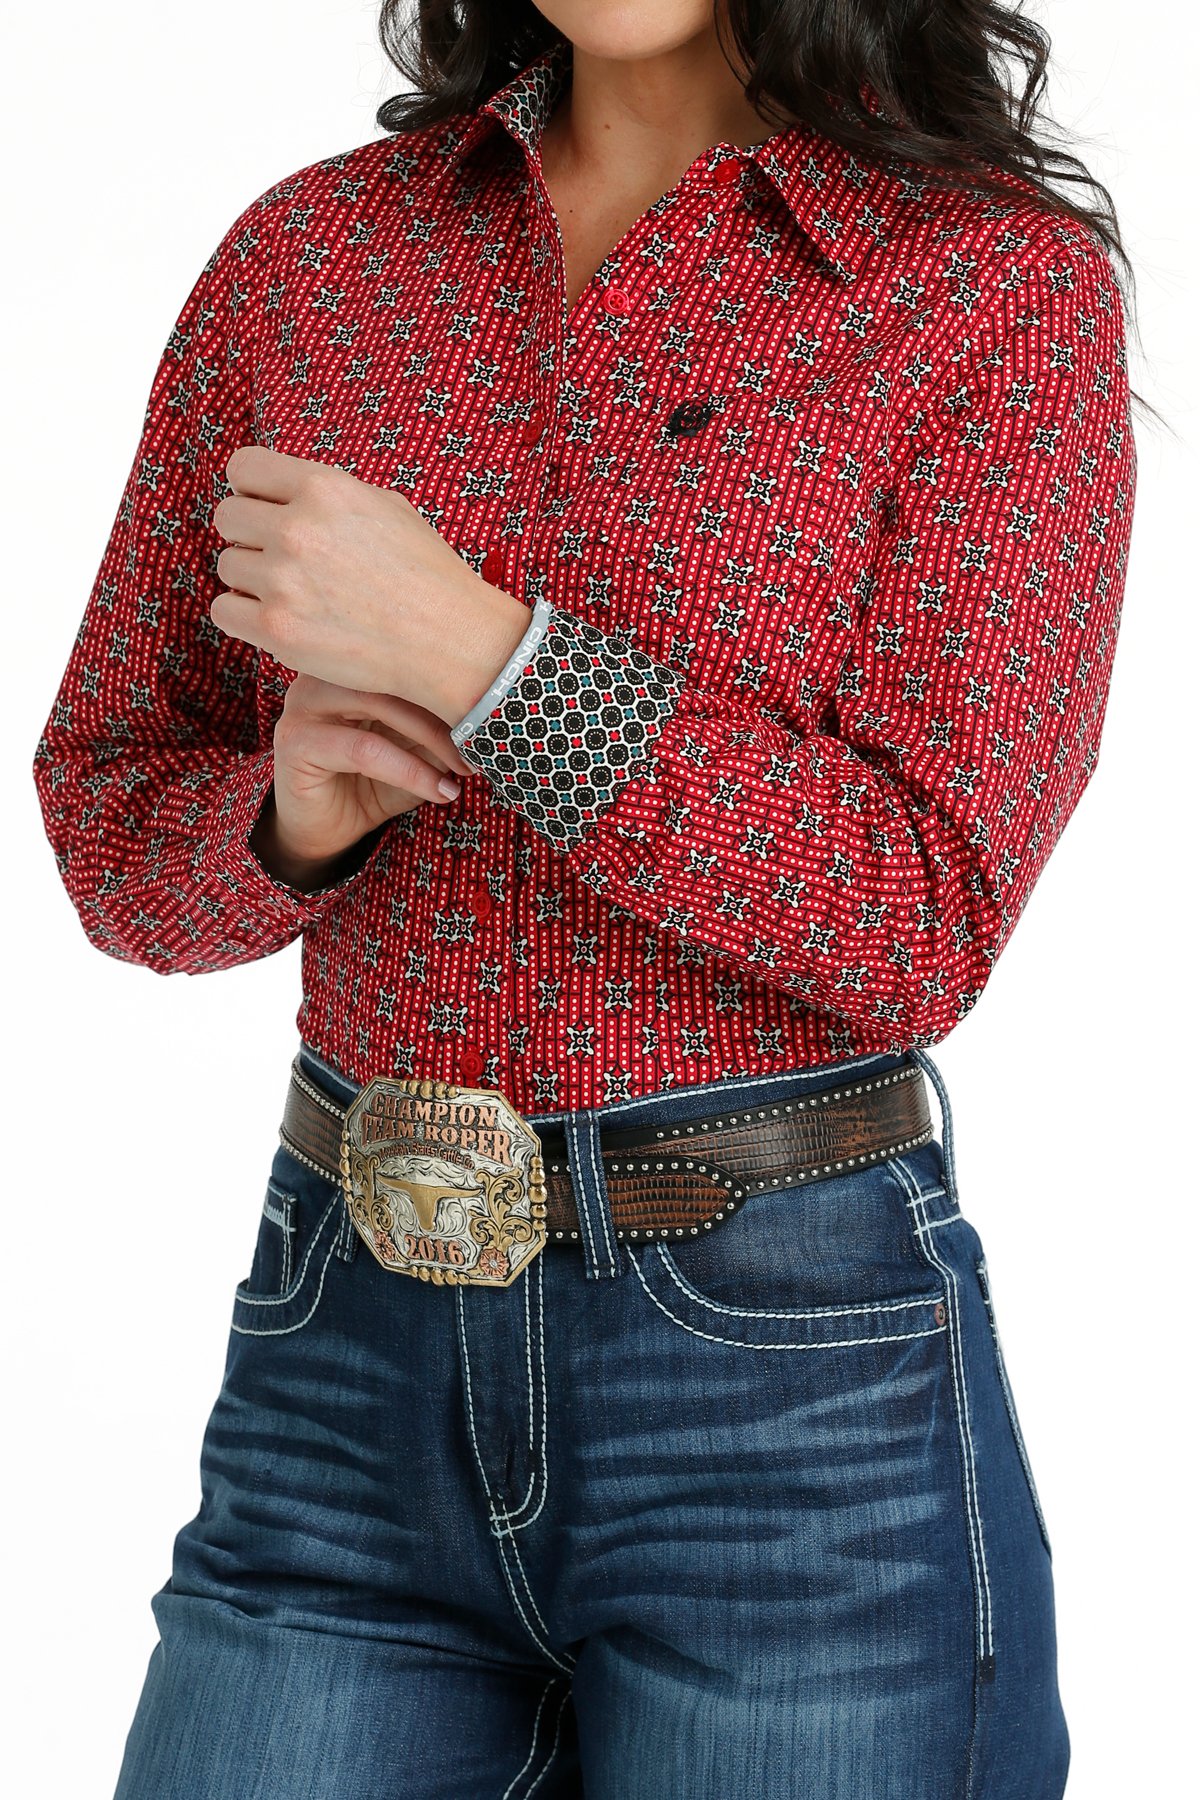 chemise équitation western femme cinch rouge